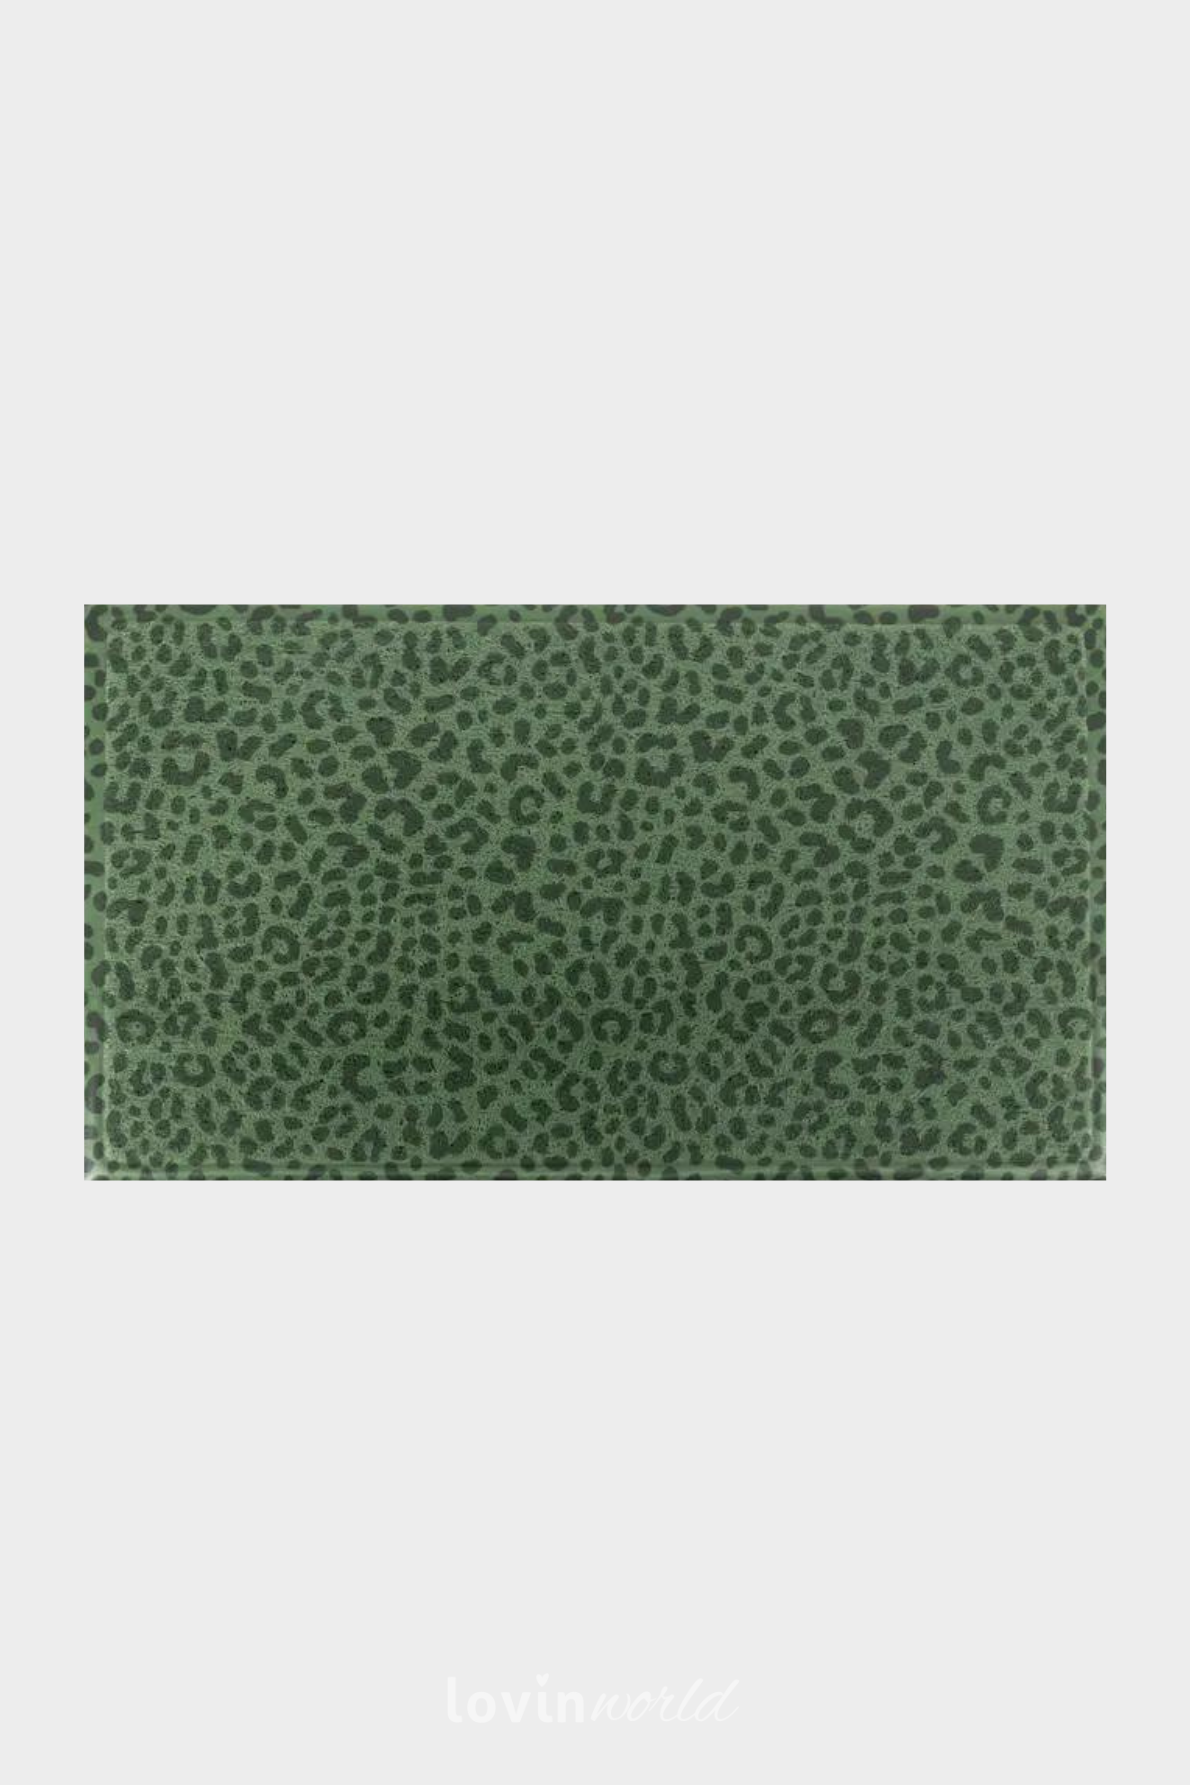 Zerbino particolare Leopardato, in colore verde 40x70 cm.-1